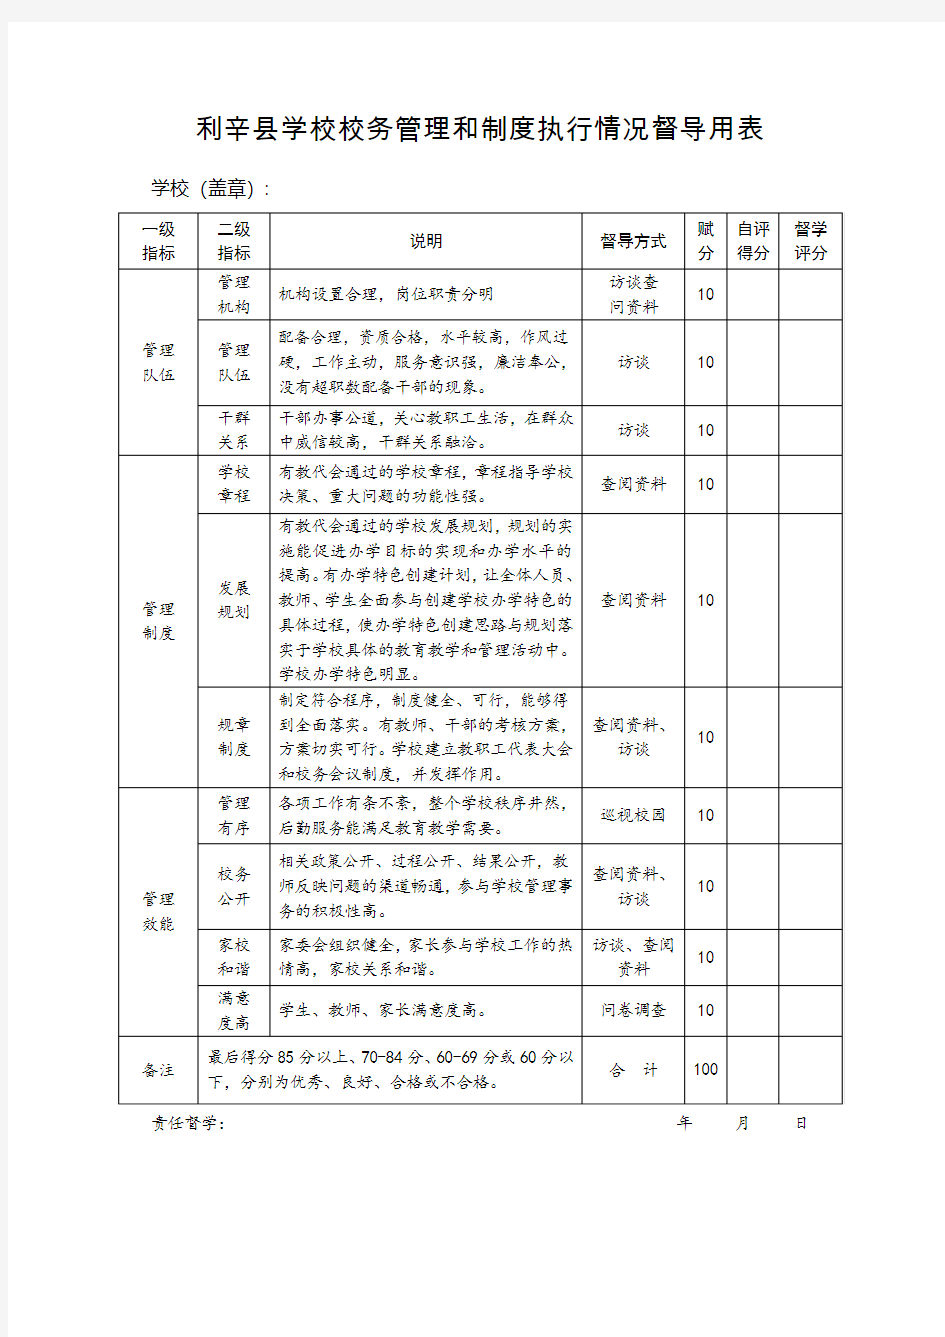 7.学校校务管理和制度执行情况督导用表